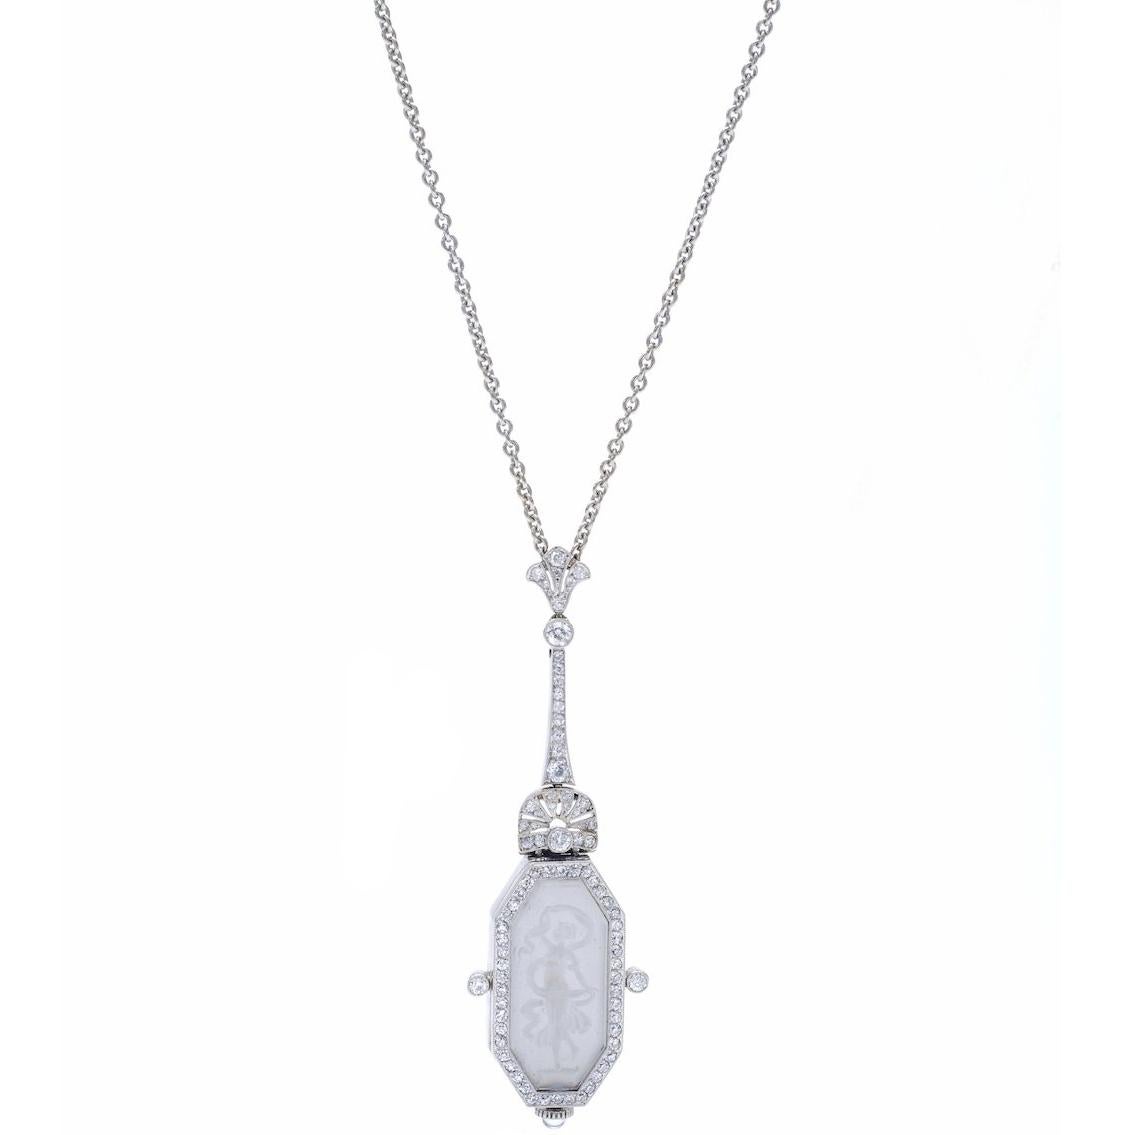 1910s Belle Époque Diamond Platinum Pendant Pocket Watch Chain Necklace